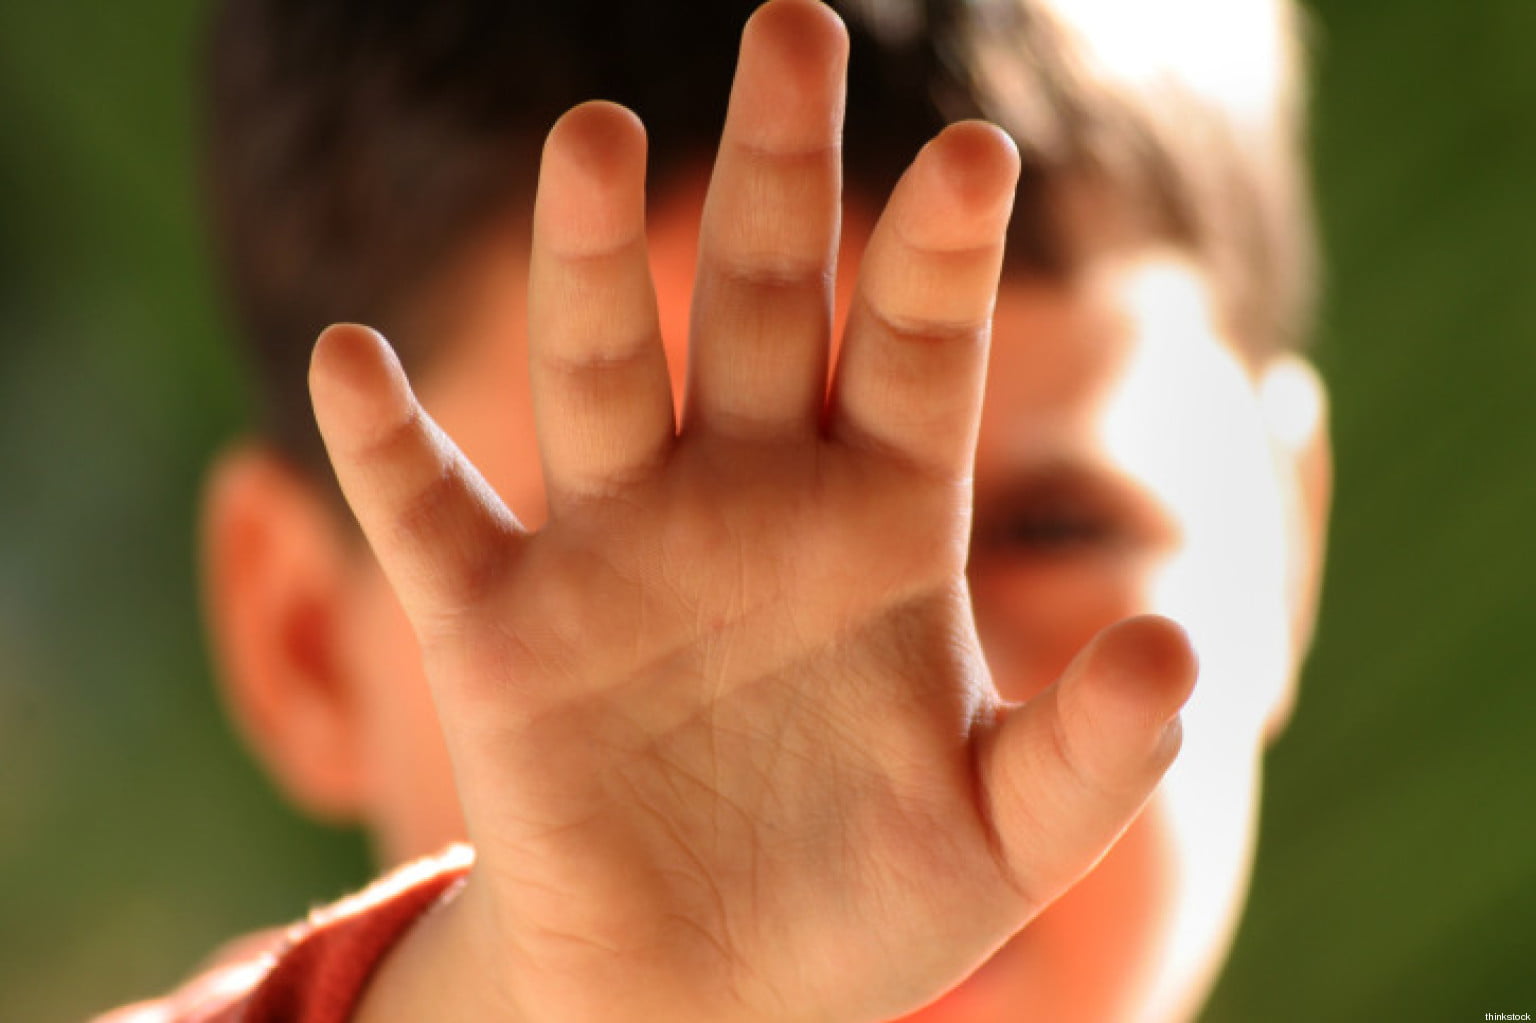 Bambini maltrattati: i segnali da cogliere per aiutarli • Centro Il Grillo Parlante • Pisa